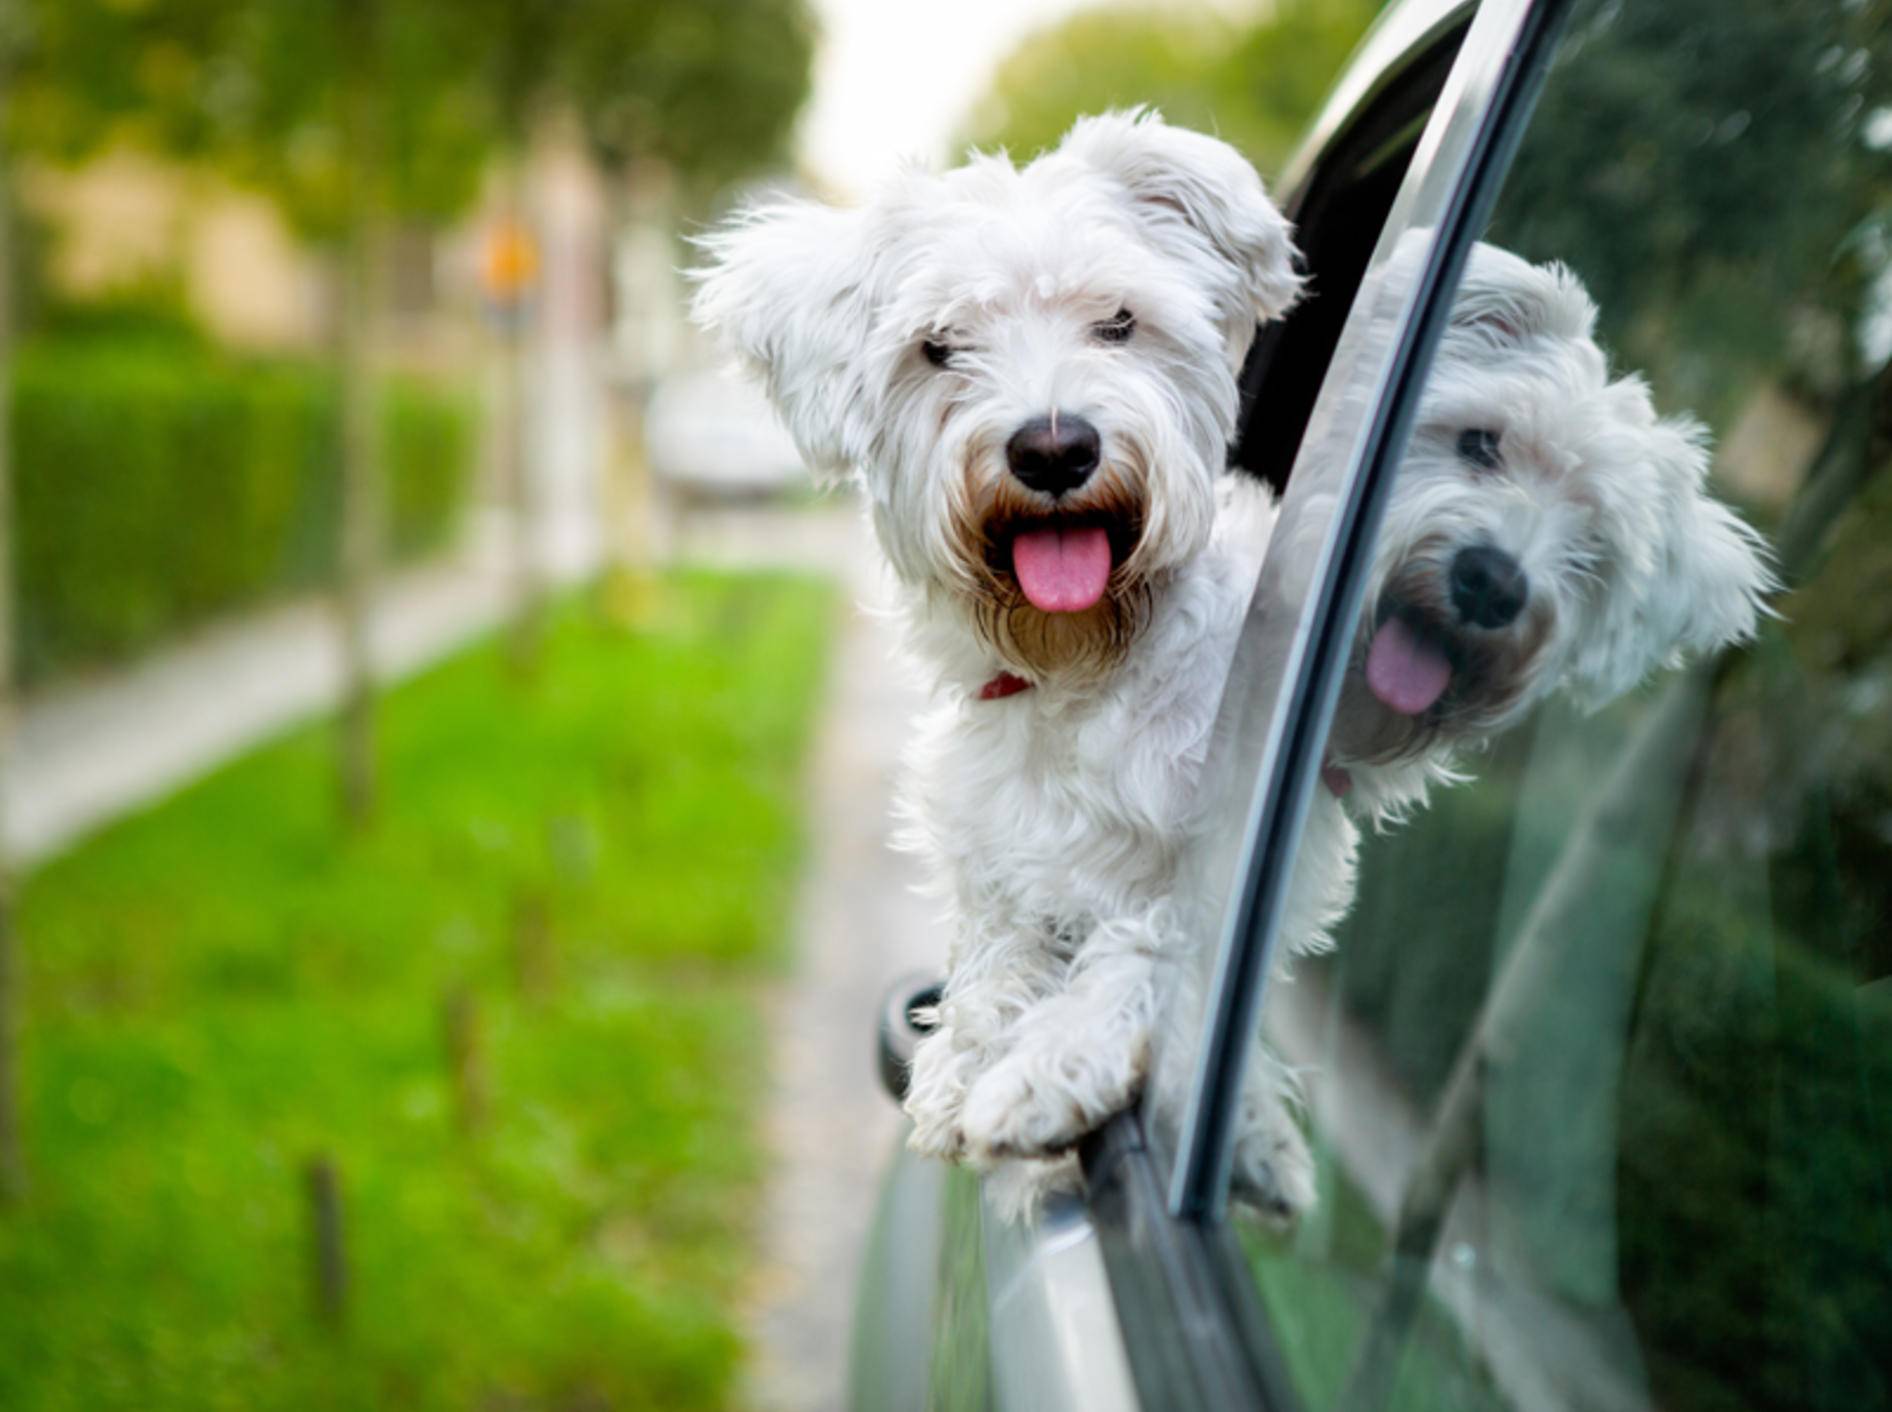 "Huiiii, das macht Spaß!": Dieser süße Malteser liebt es, beim Autofahren aus dem Fenster zu sehen – Shutterstock / Lucky Business